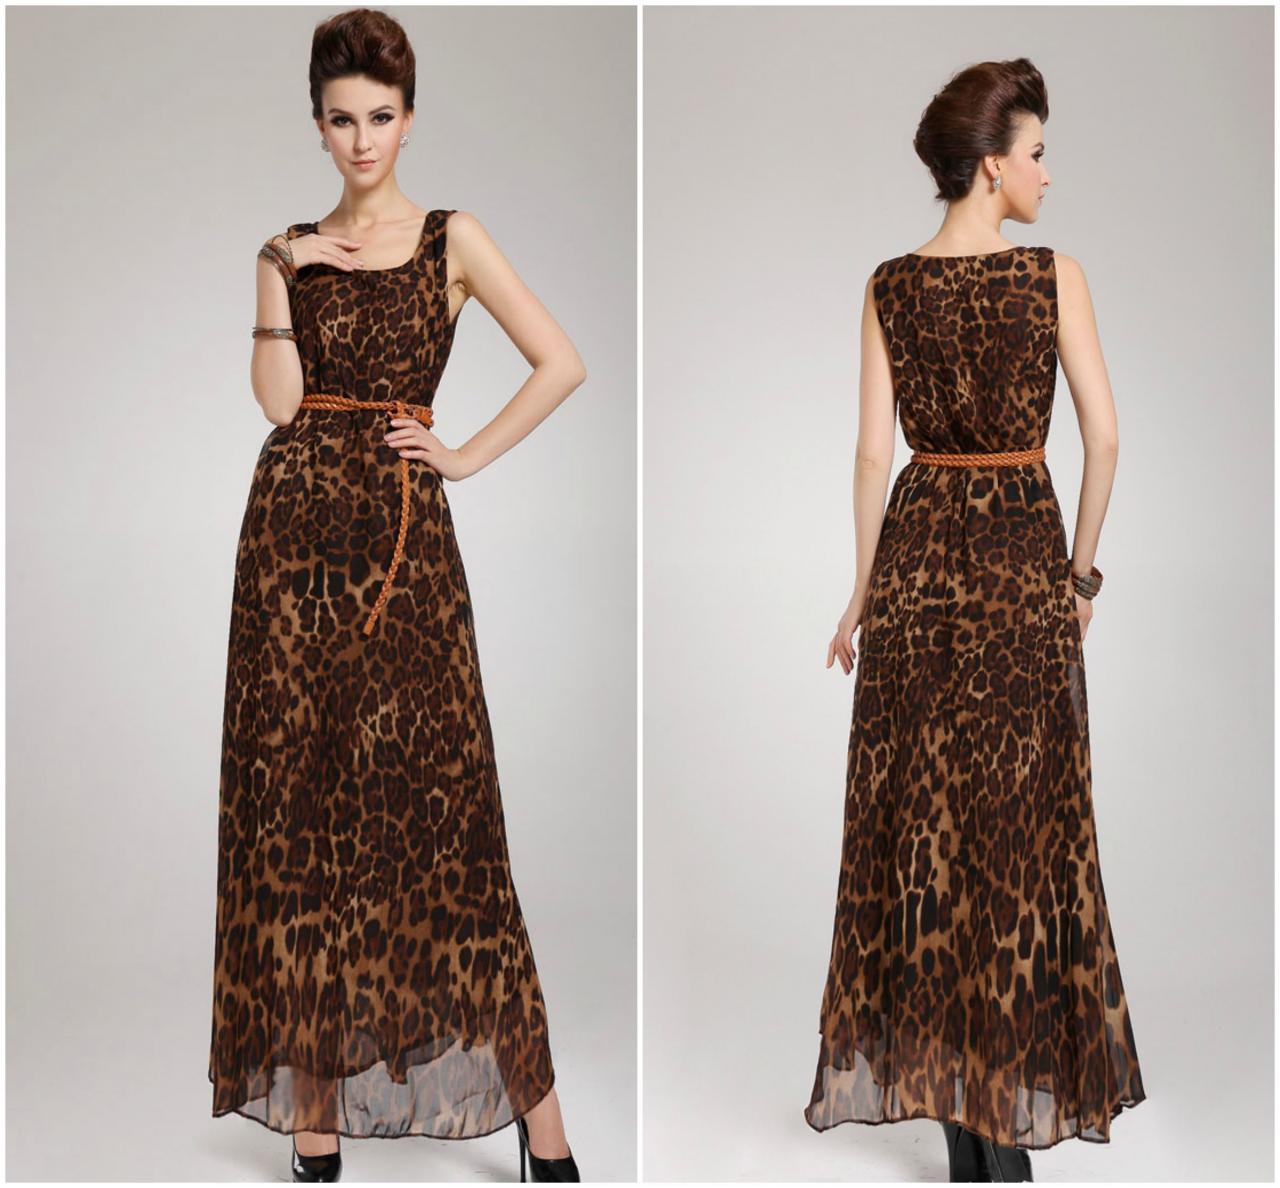 Leopard Print Chiffon Maxi Dress With Belt